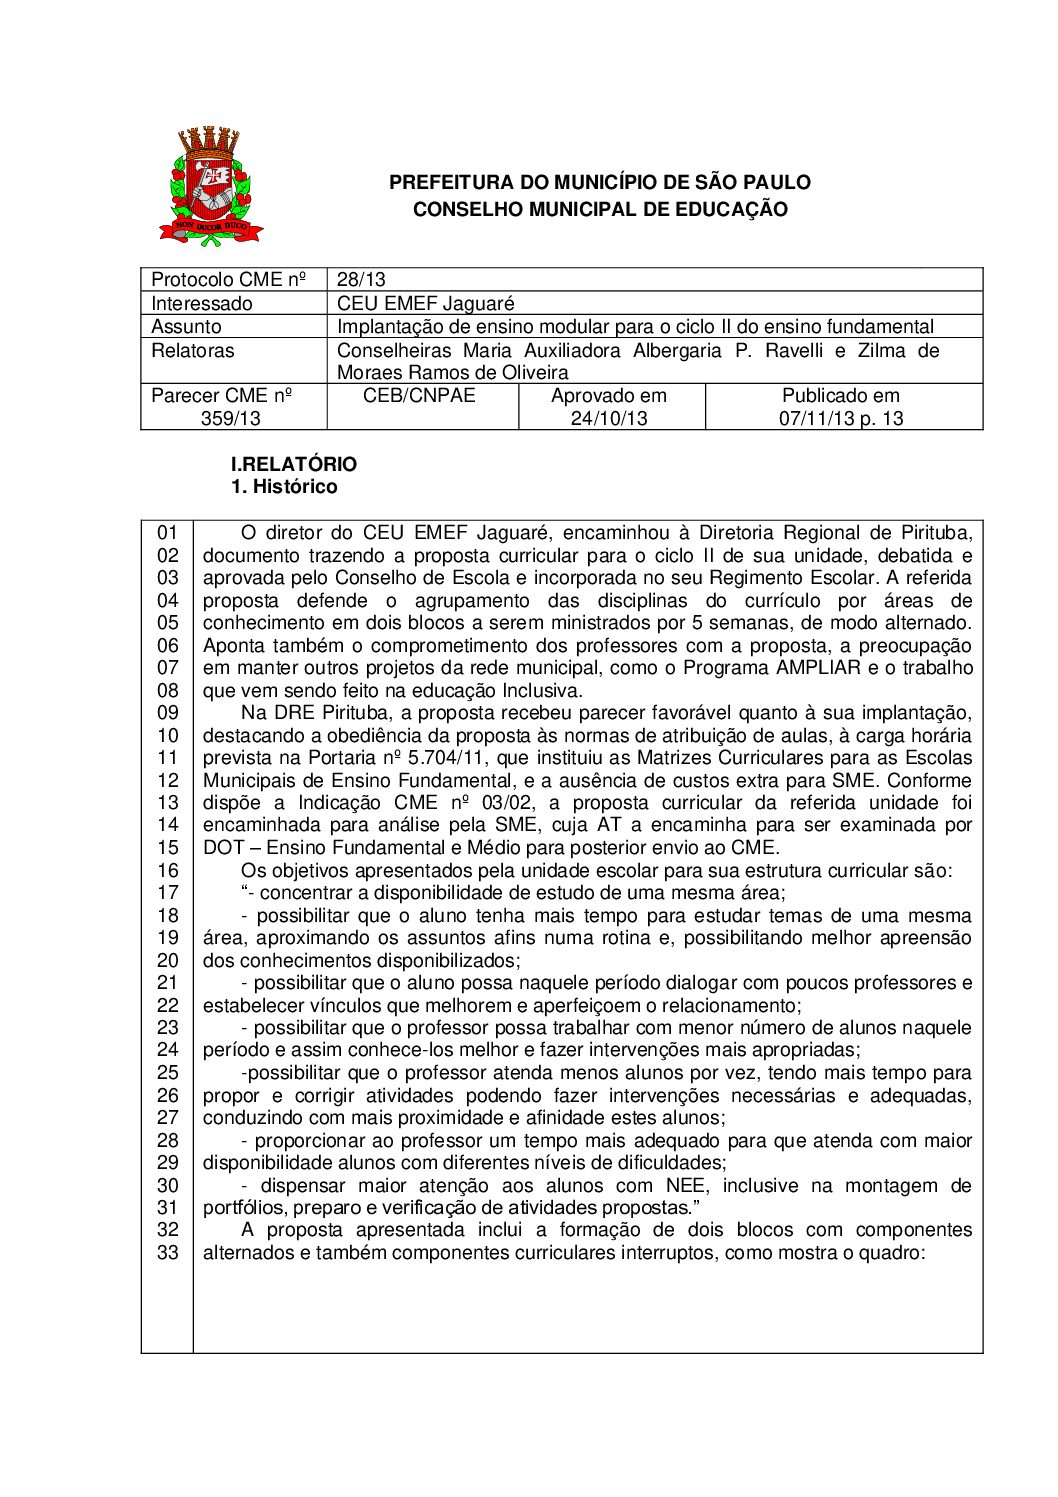 Parecer CME nº 359/2013 - CEU EMEF Jaguaré - Implantação de ensino modular para o ciclo II do ensino fundamental 